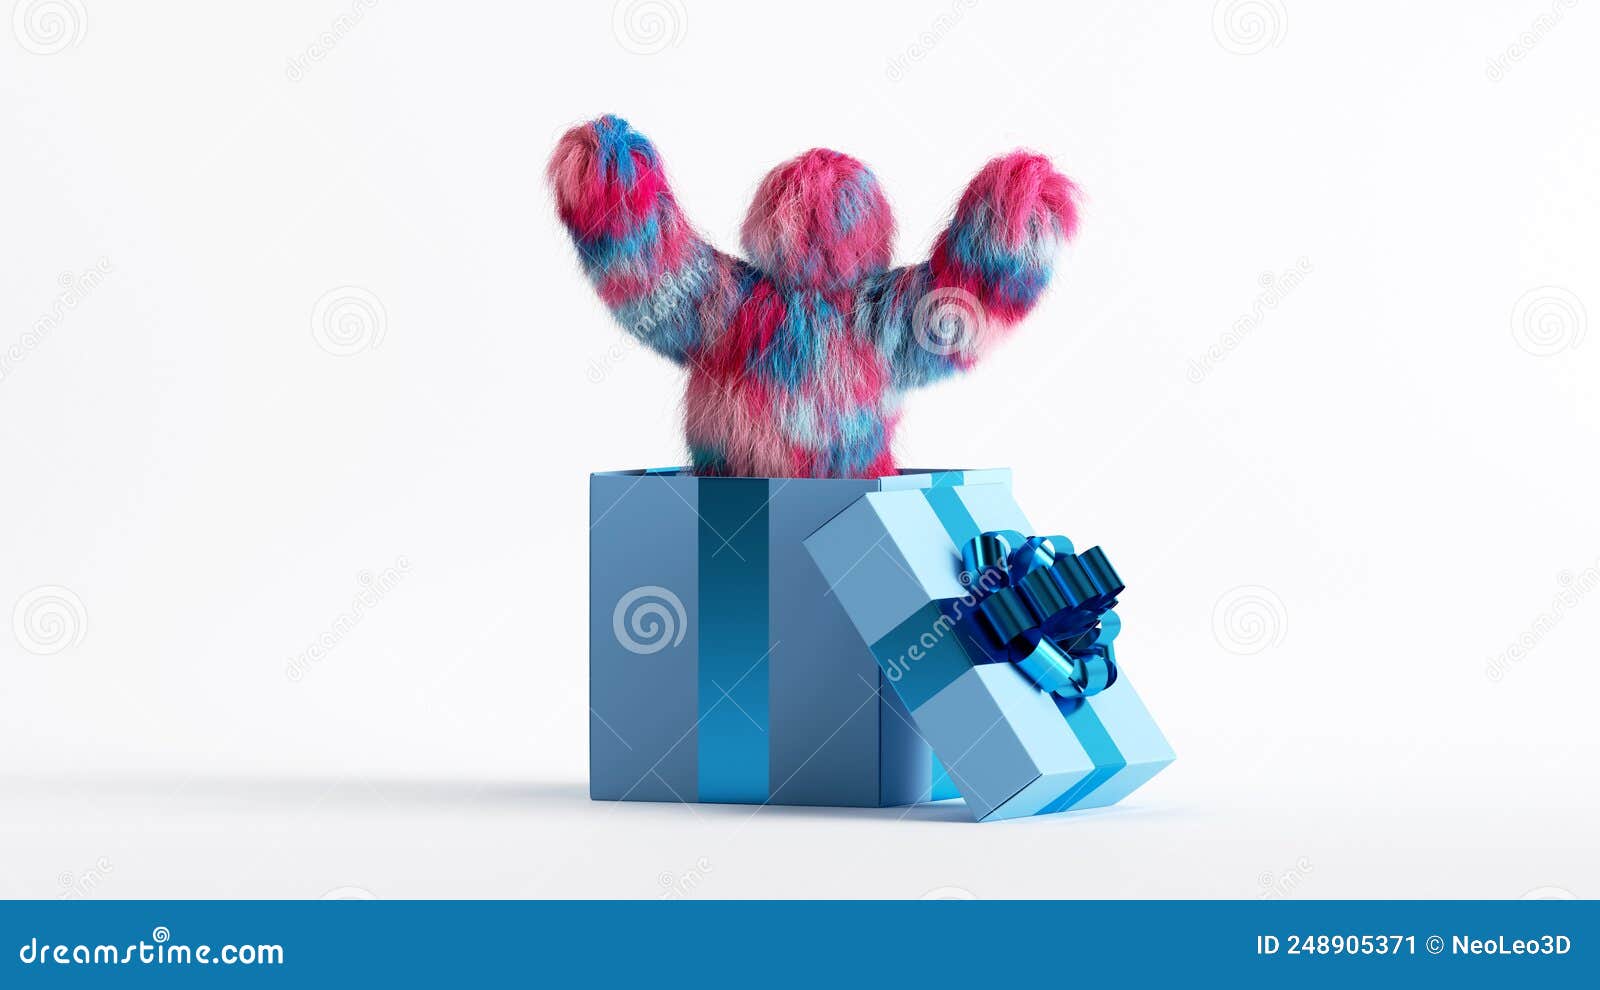 Holiday Yeti Gift Set